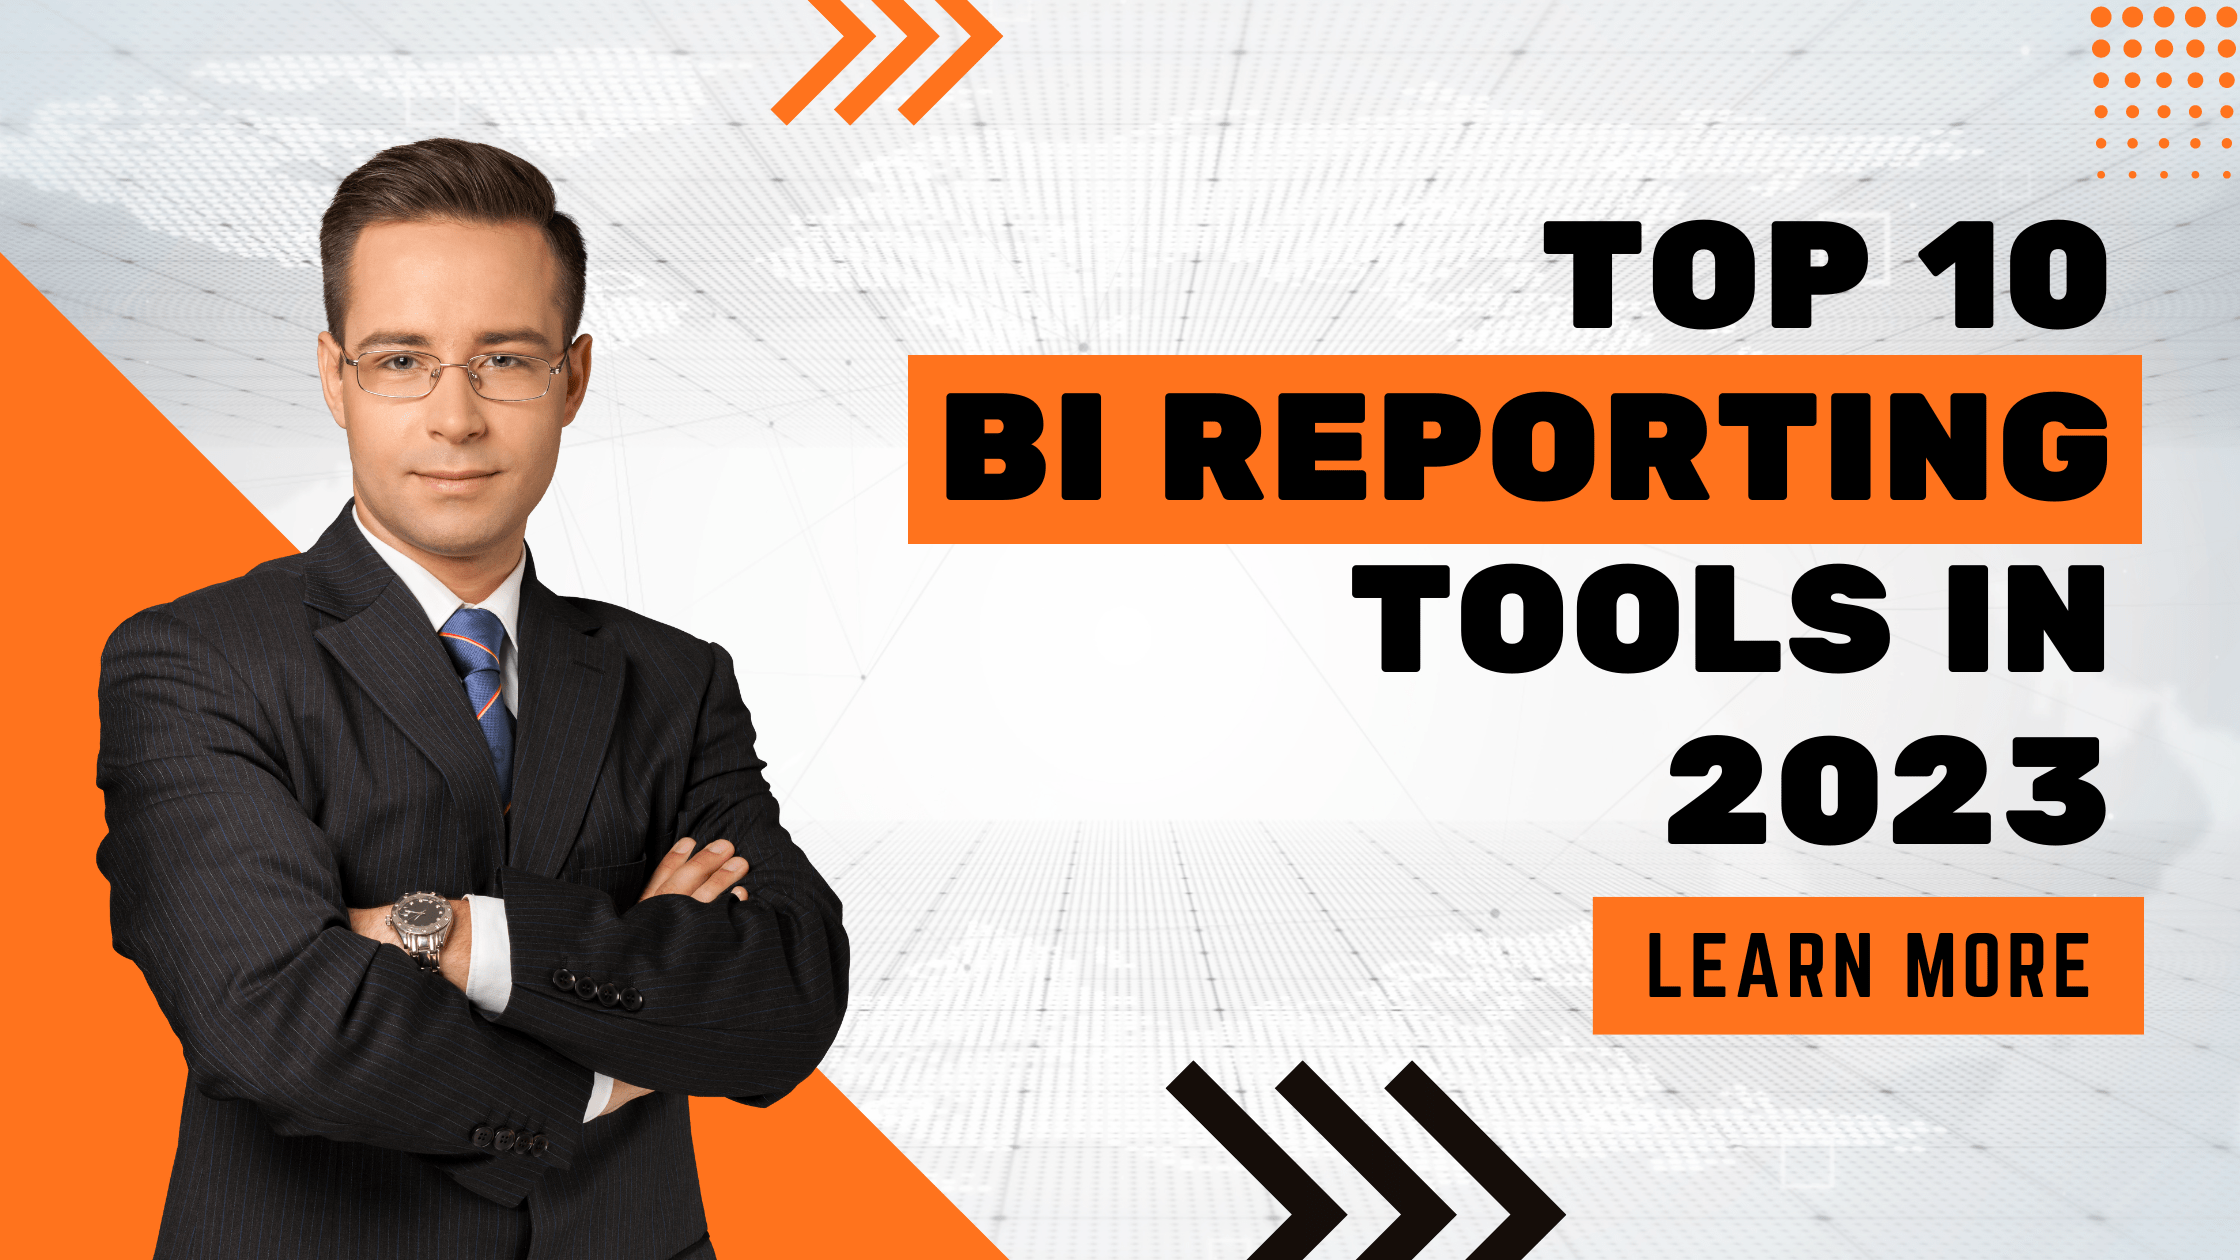 Top 10 BI Reporting Tools in 2023